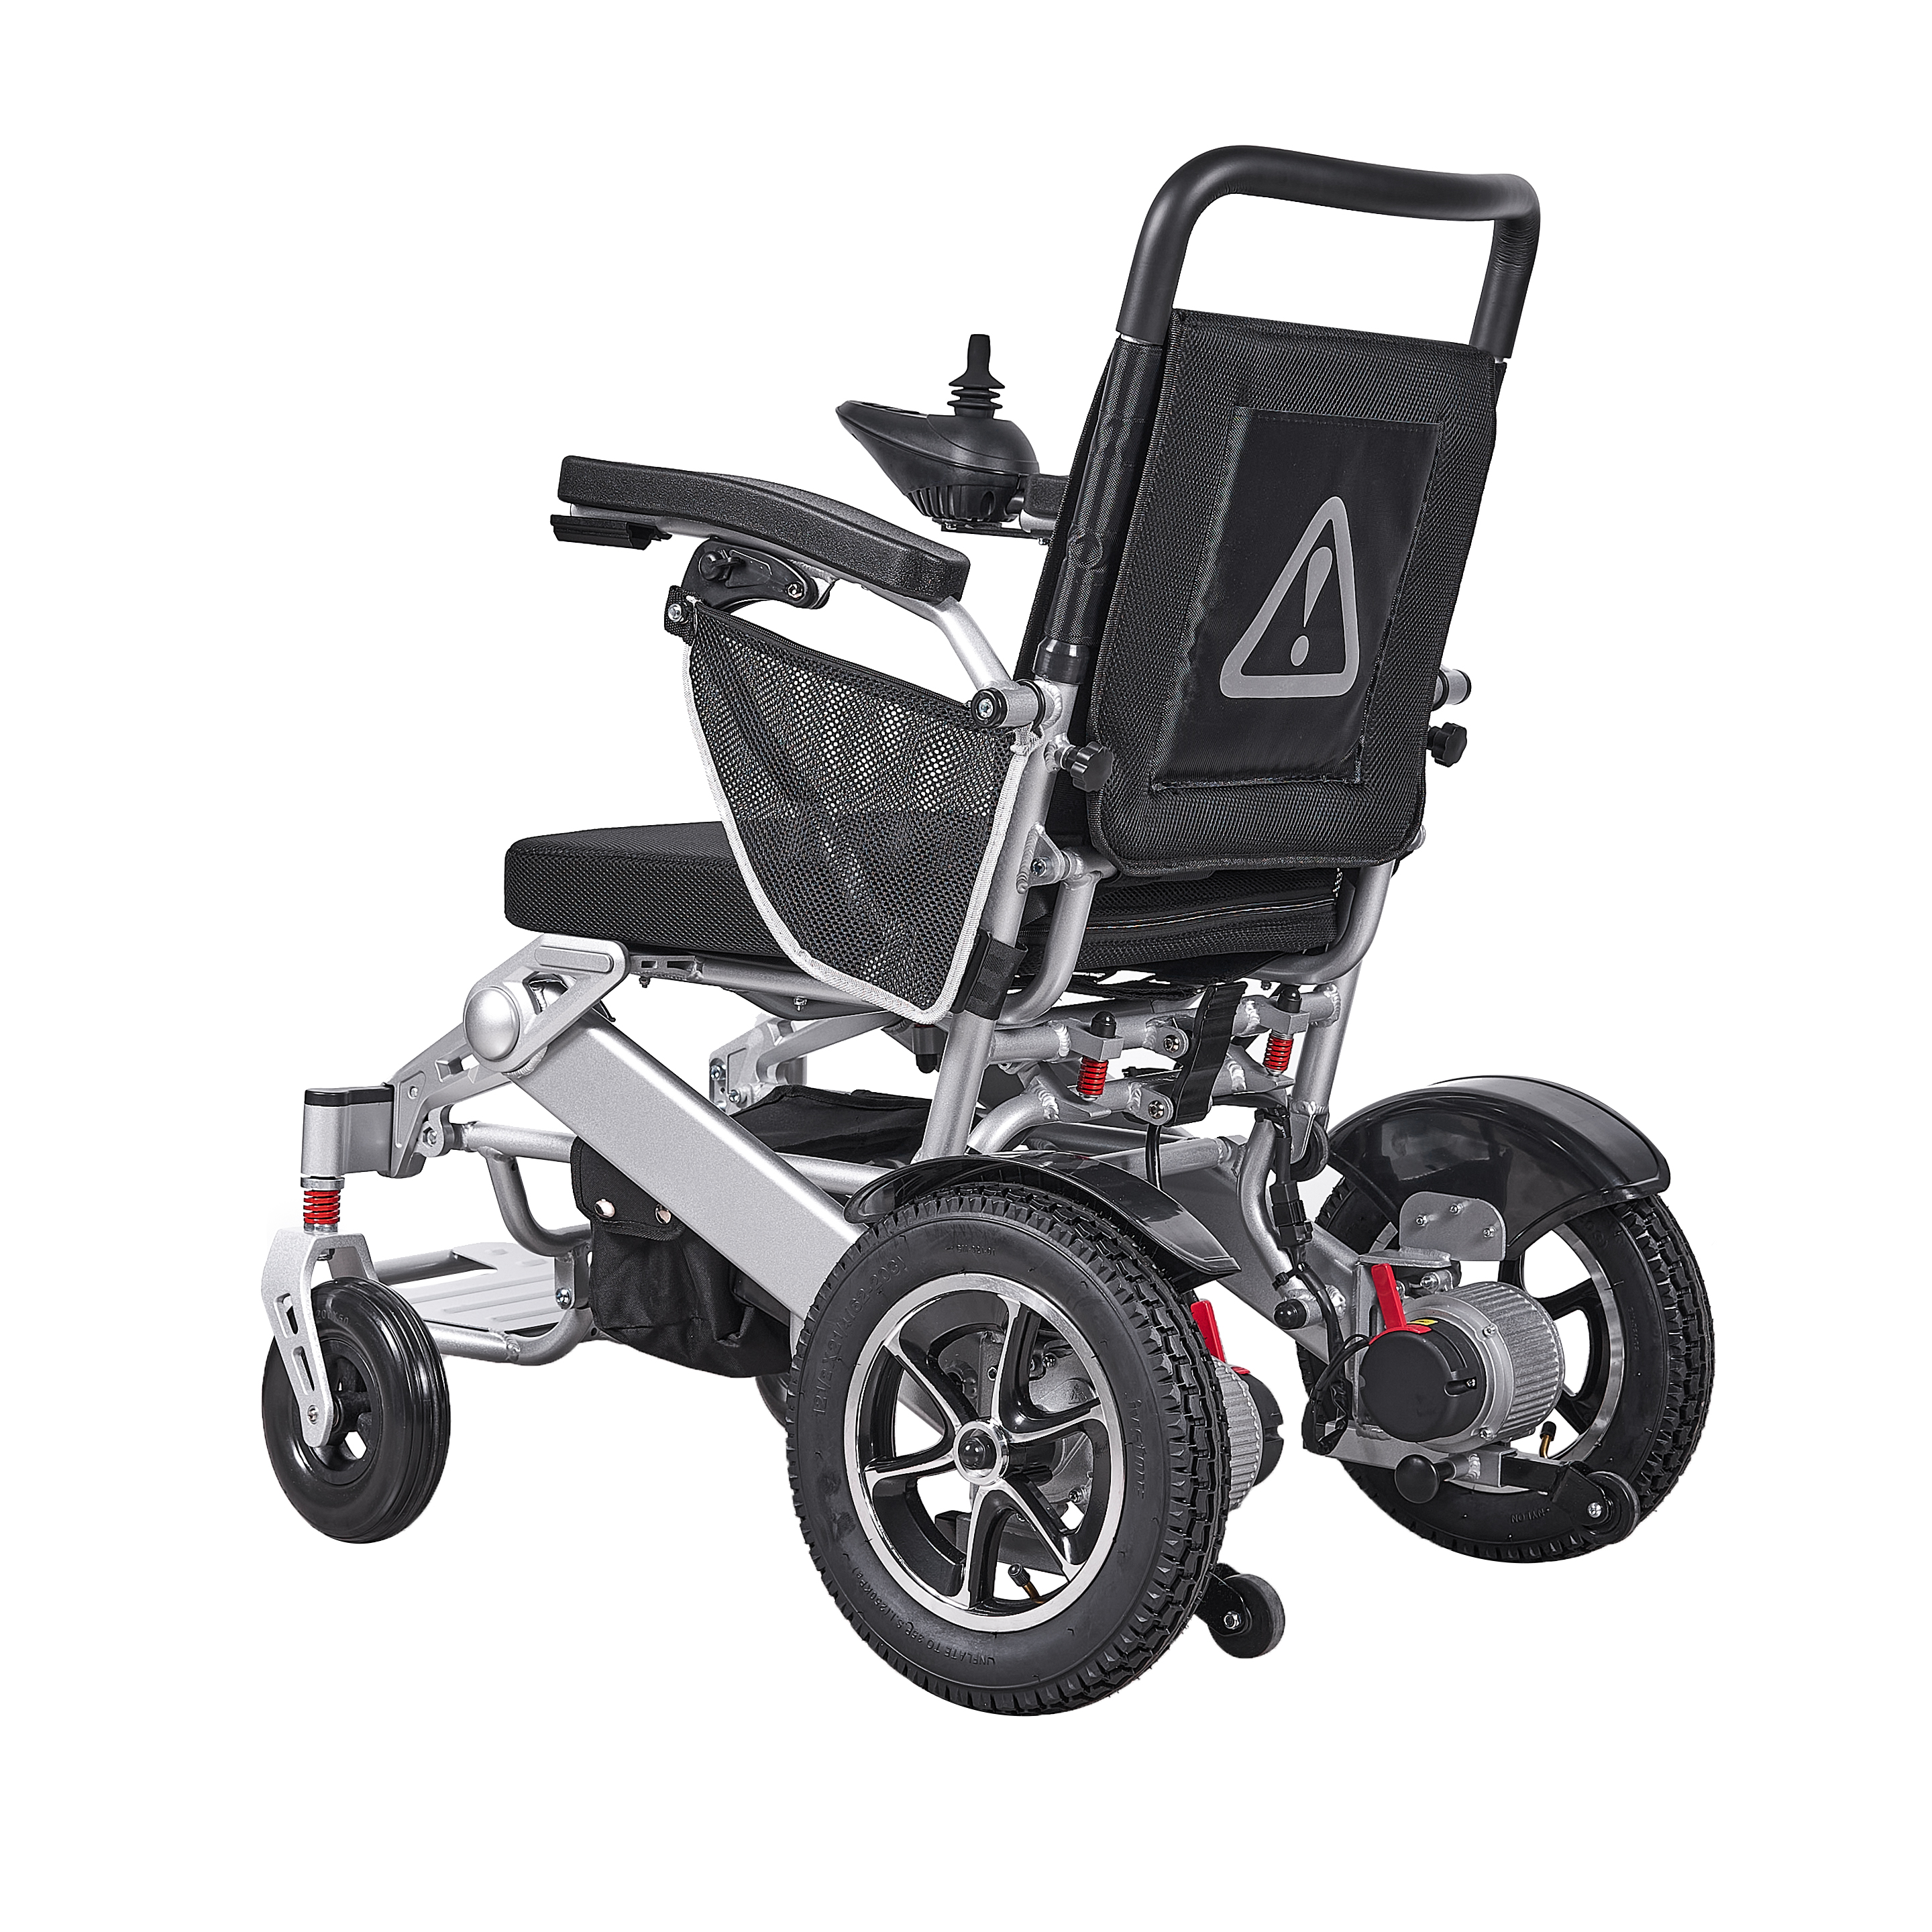 Baichen Meidical Bc Ea9000 Wheelchair Foldable Light Weight Wheel Chair Price Wheelchair Wholesale Mobility Wheelchair4